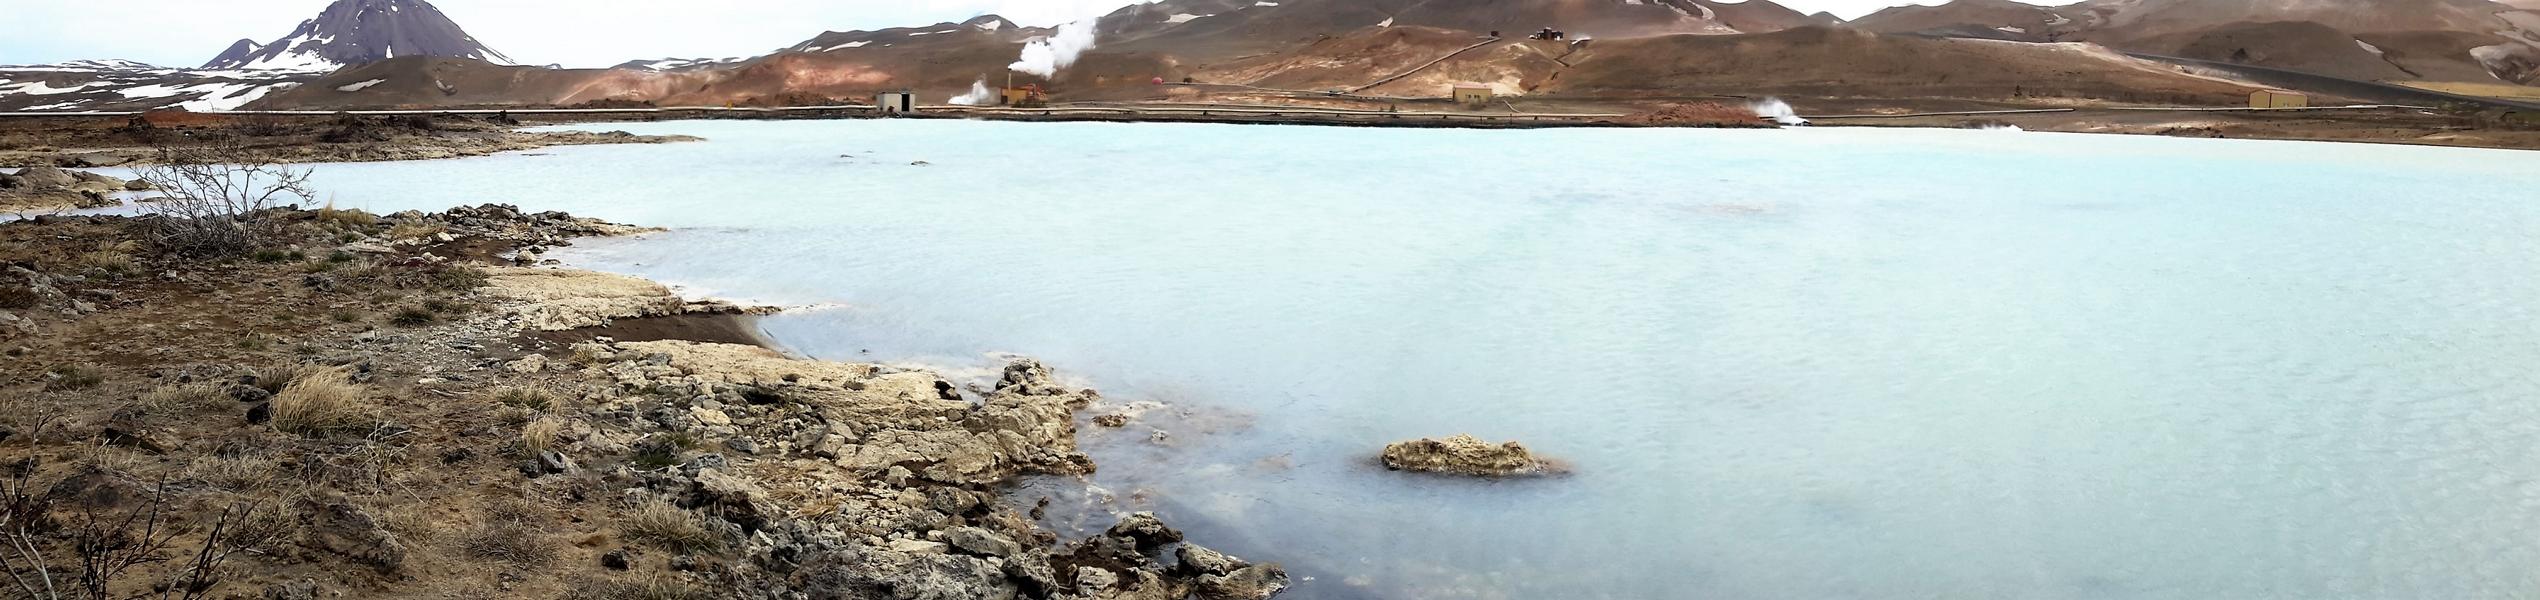 Linksseitig am Fuße des Passes befindet sich ein hellblau gefärbter See  unter dessen Wasseroberfläche sich heiße Quellen befinden und von daher das Baden verboten ist.